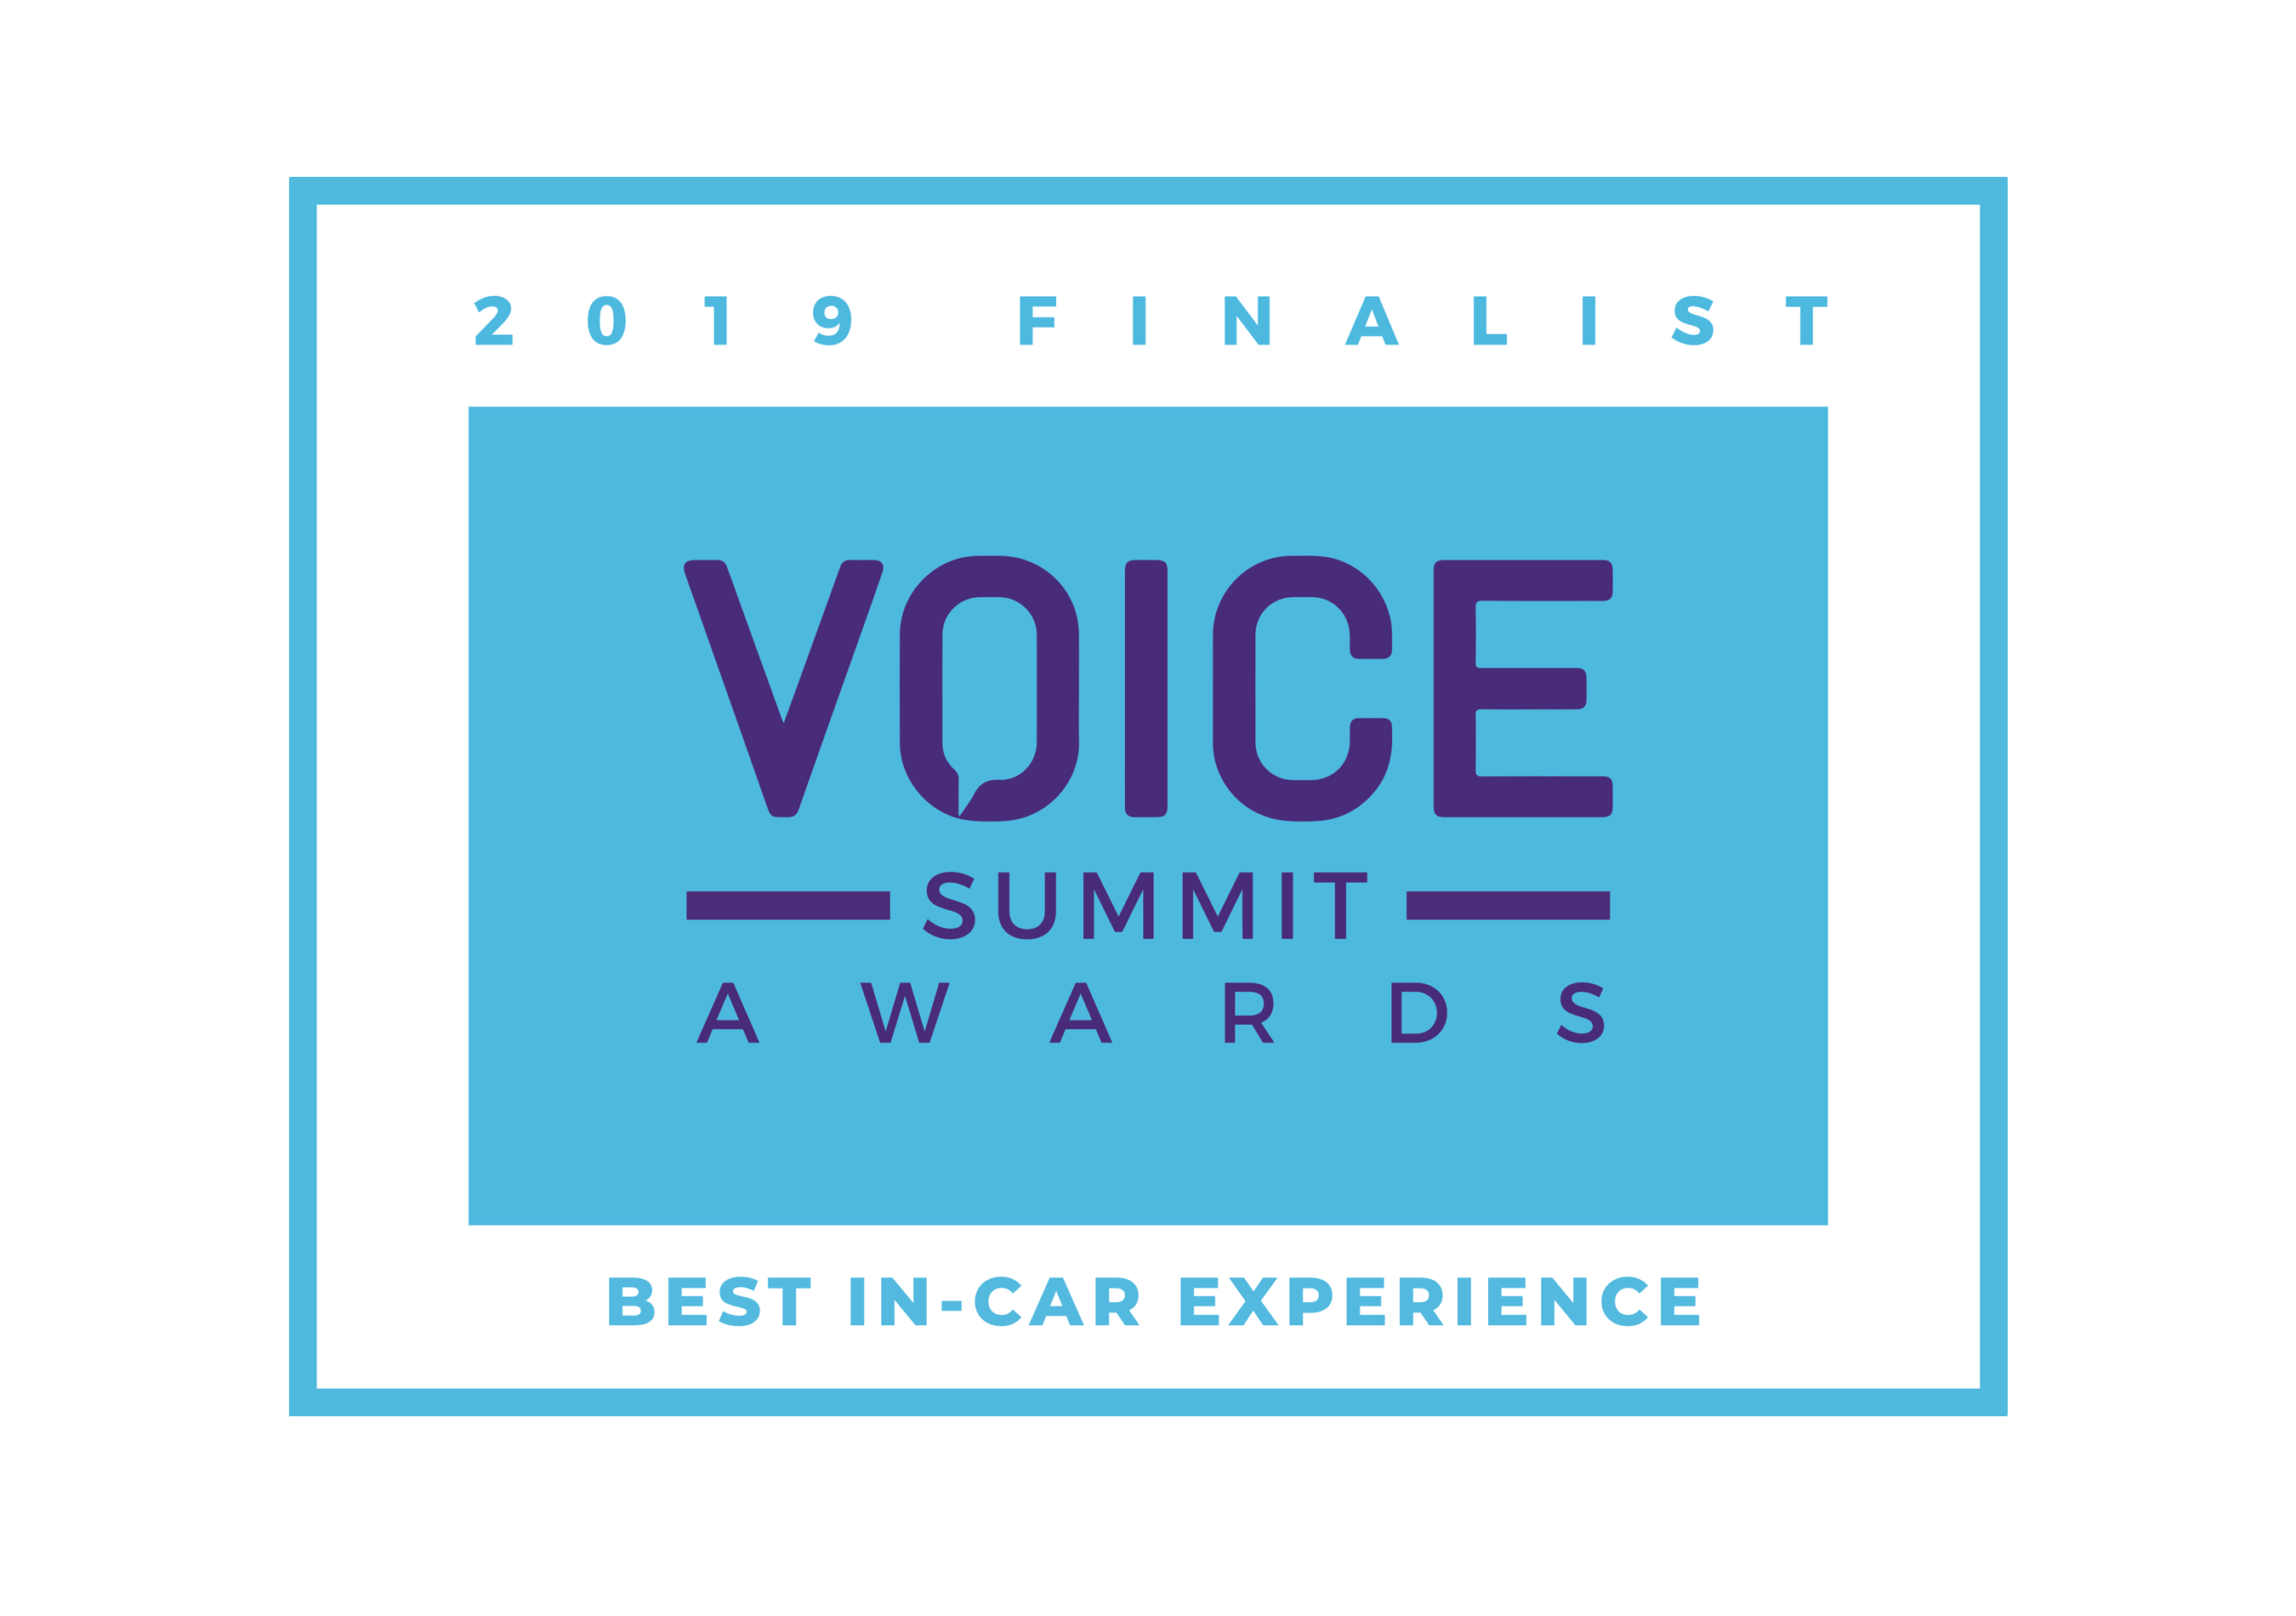 Voice Summit Awards 2019